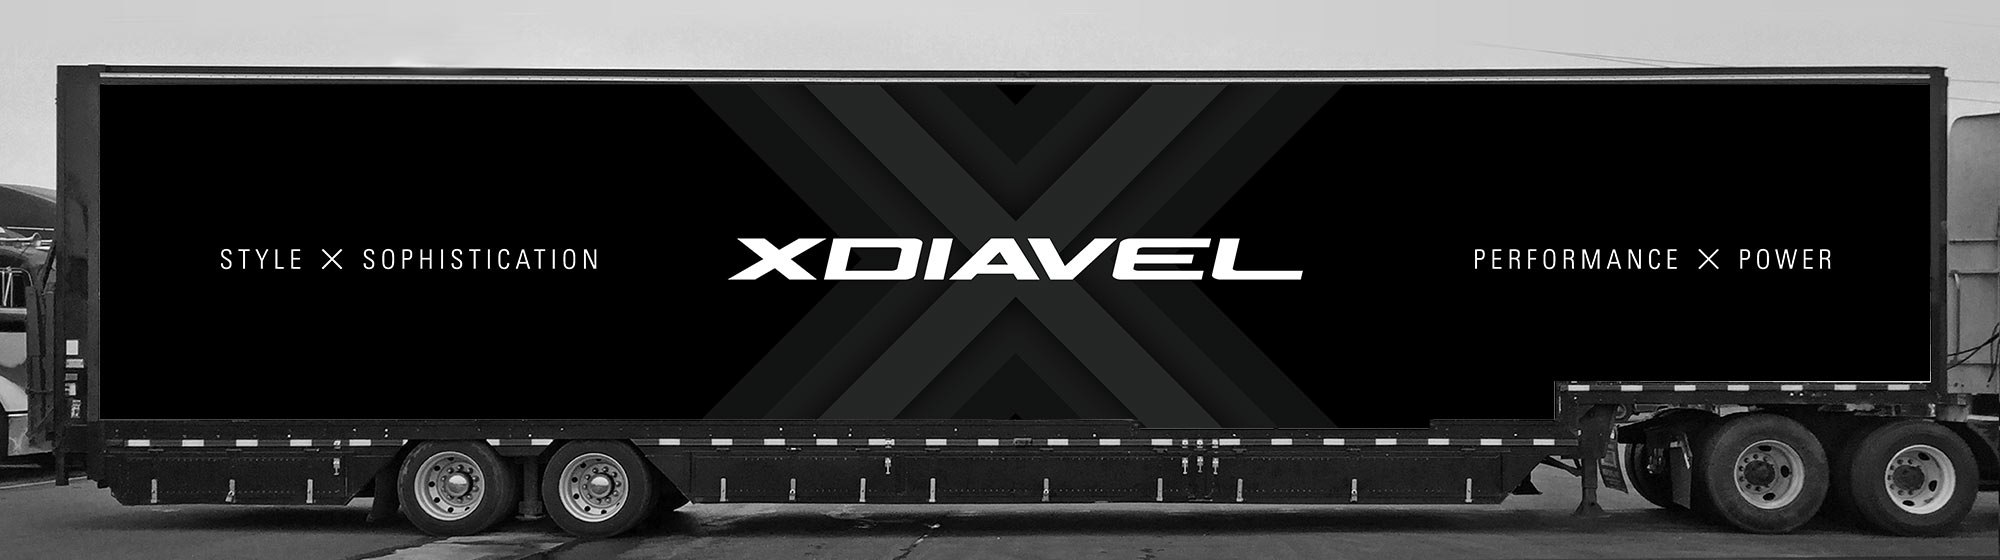 XDiavel Truck Branding Experiential Design - passenger side